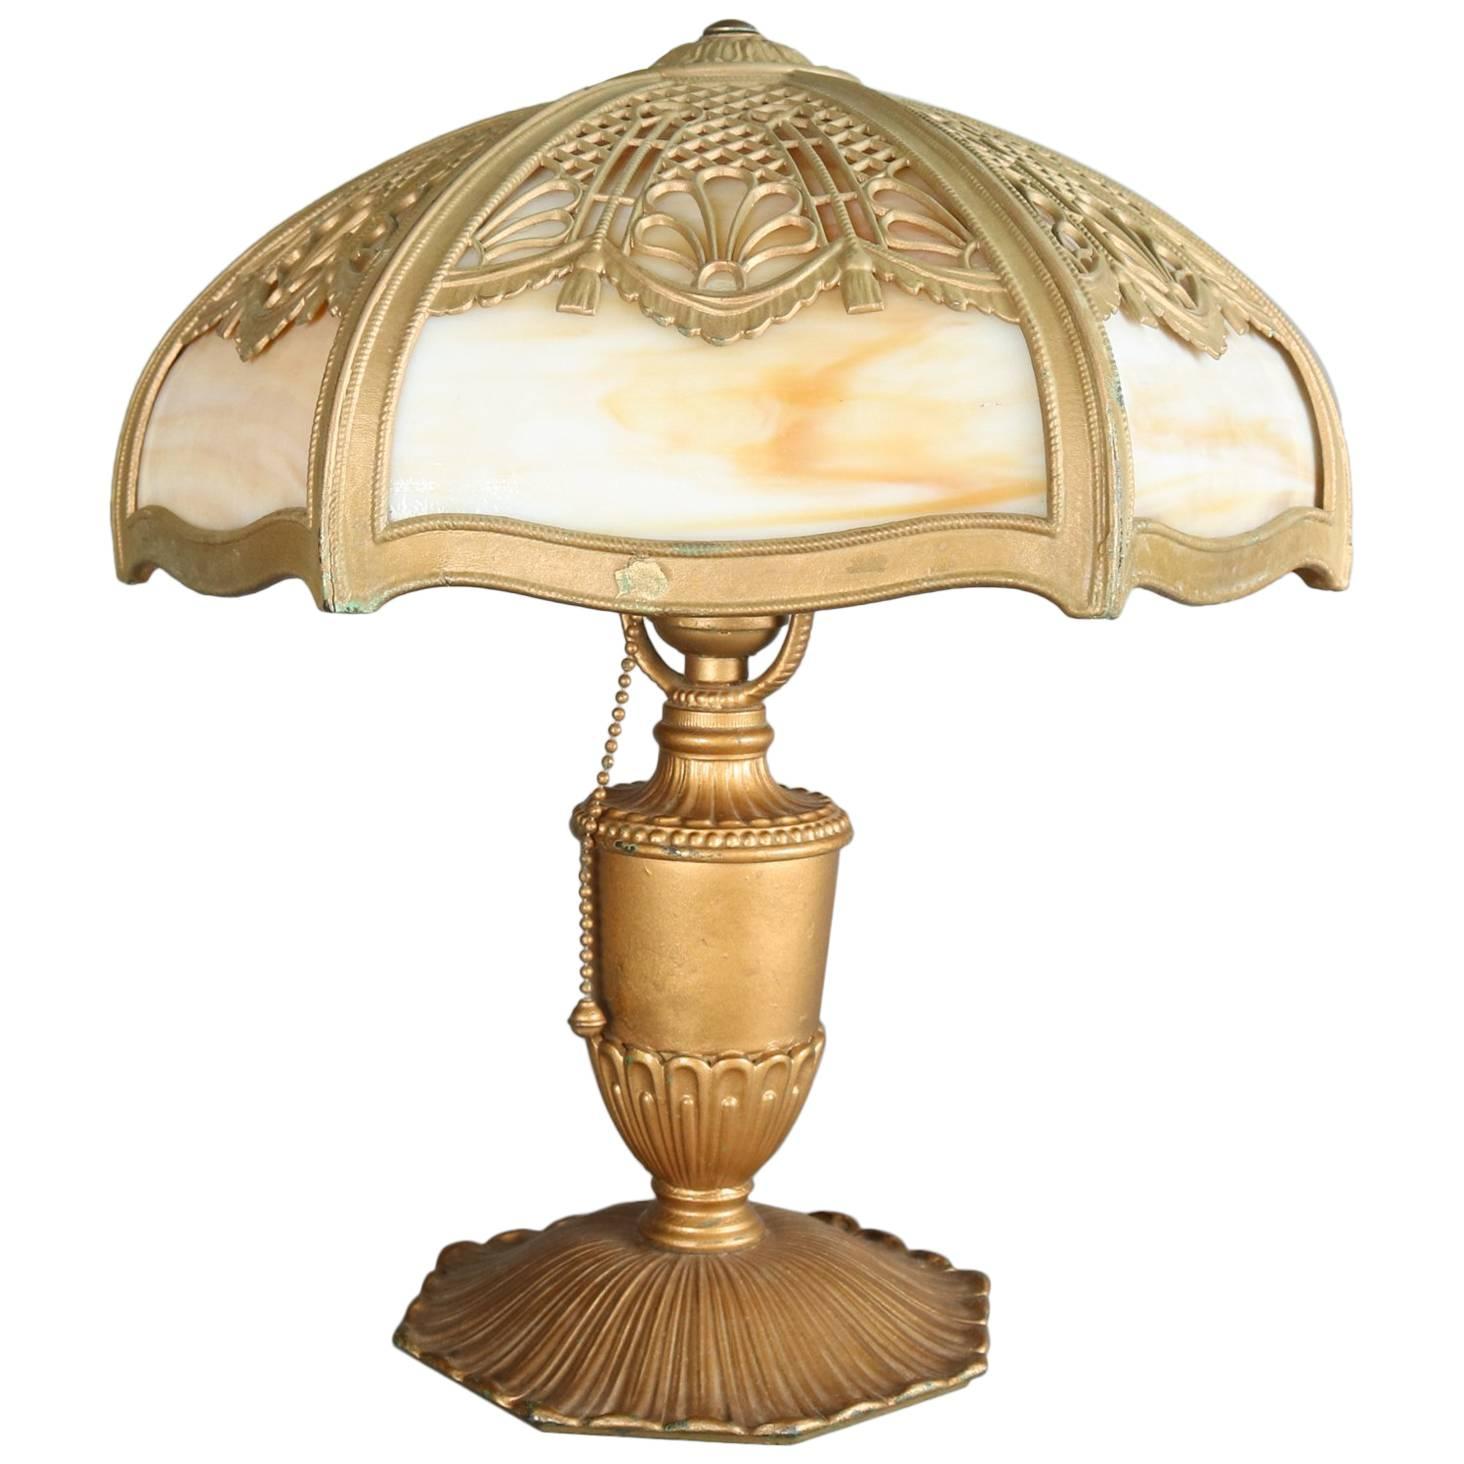 Antique Arts & Crafts Miller & Co Slag Glass Lamp, Filigree Shade, 1911